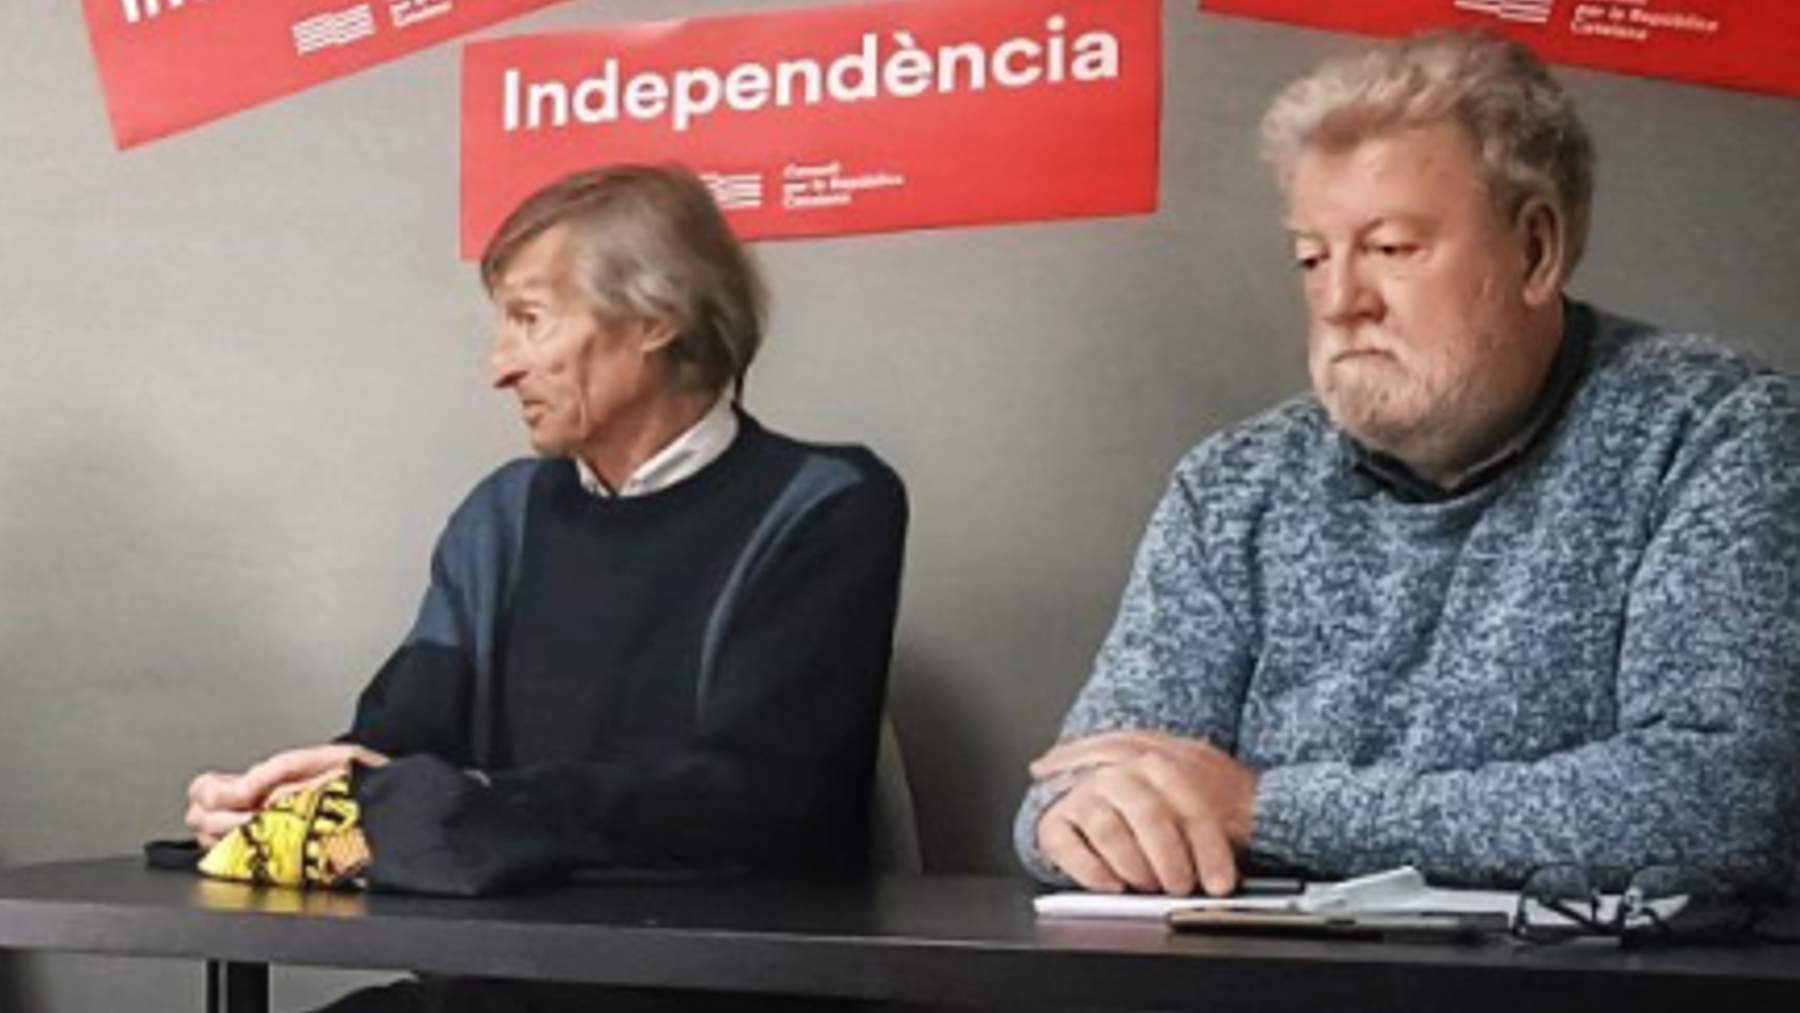 El sindicalista independentista de UOB, Jaume Sastre a la derecha de la imagen.